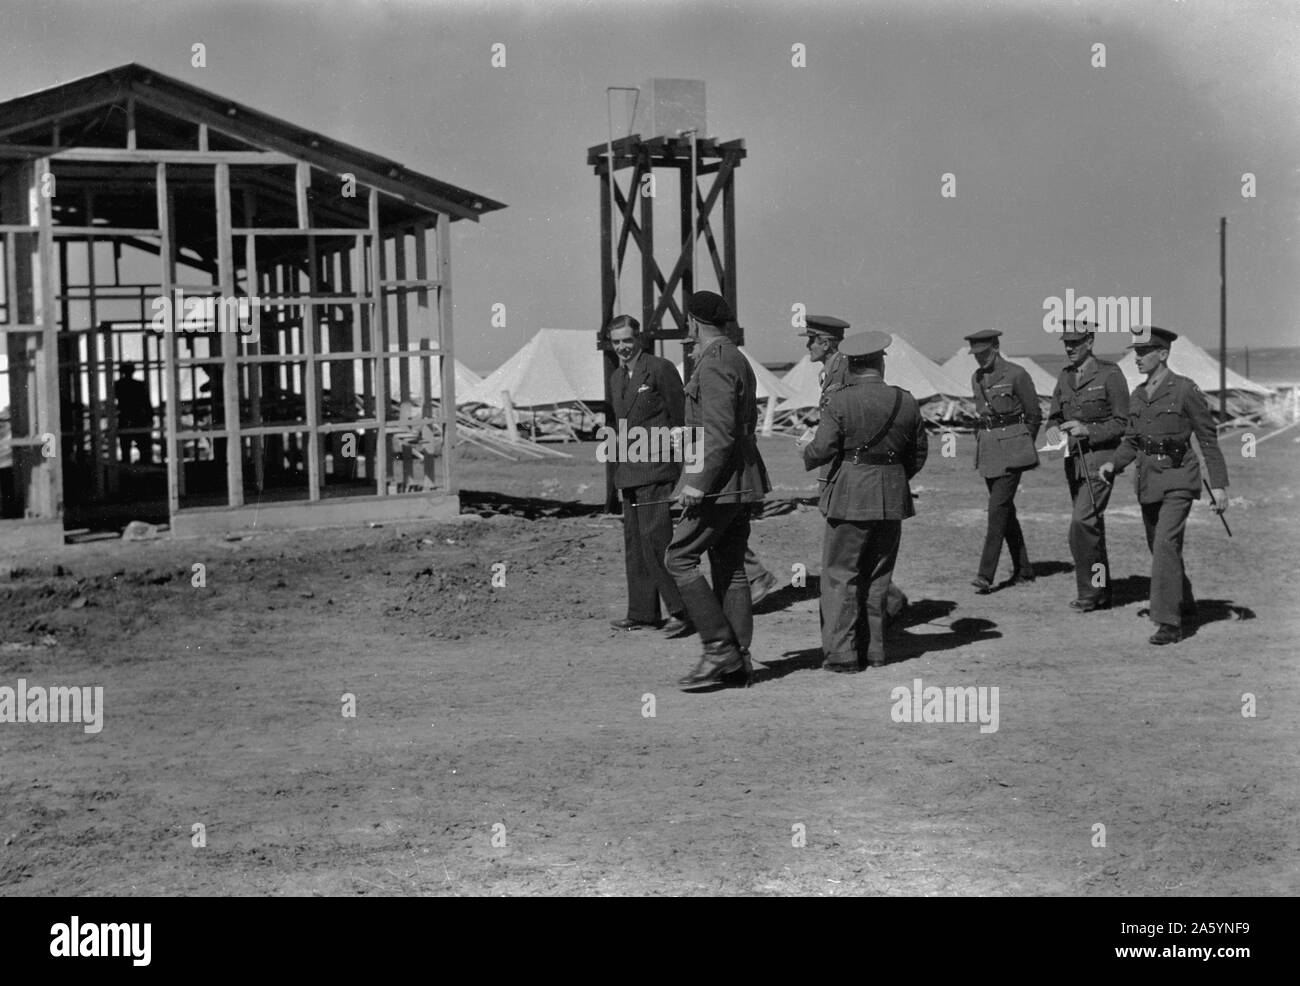 Arrivée en Palestine de M. Anthony Eden (Ministre britannique des Affaires étrangères). M. Eden et dirigeants marchant à travers le camp australien dans S. la Palestine. 1942 Banque D'Images